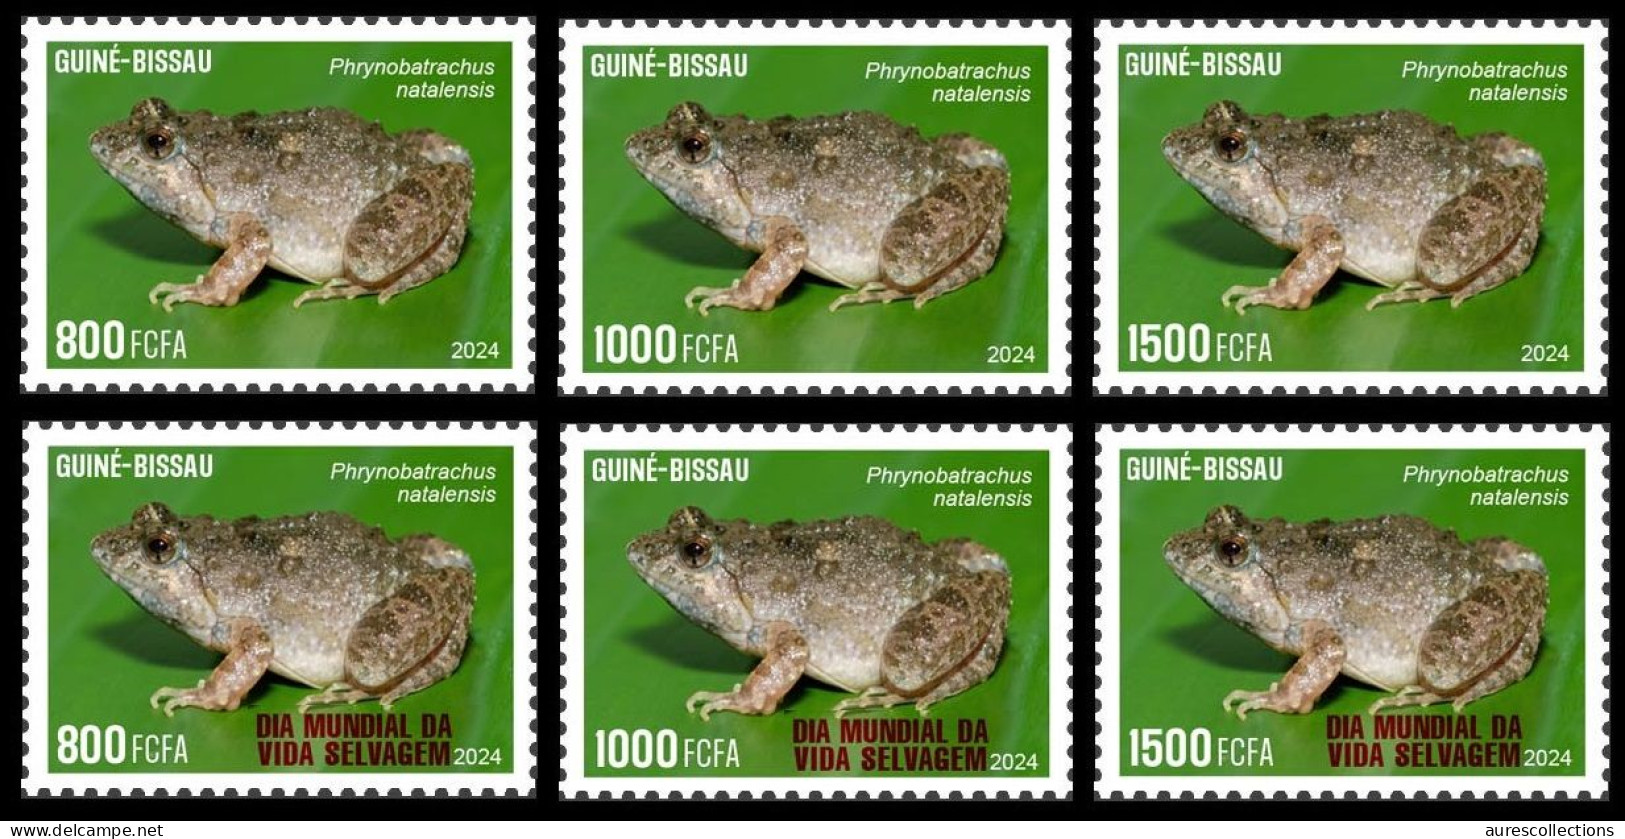 GUINEA BISSAU 2024 SET 6V - REG & OVERPRINT - FROG FROGS GRENOUILLES - BIODIVERSITY - WILDLIFE WORLD DAY - MNH - Frogs